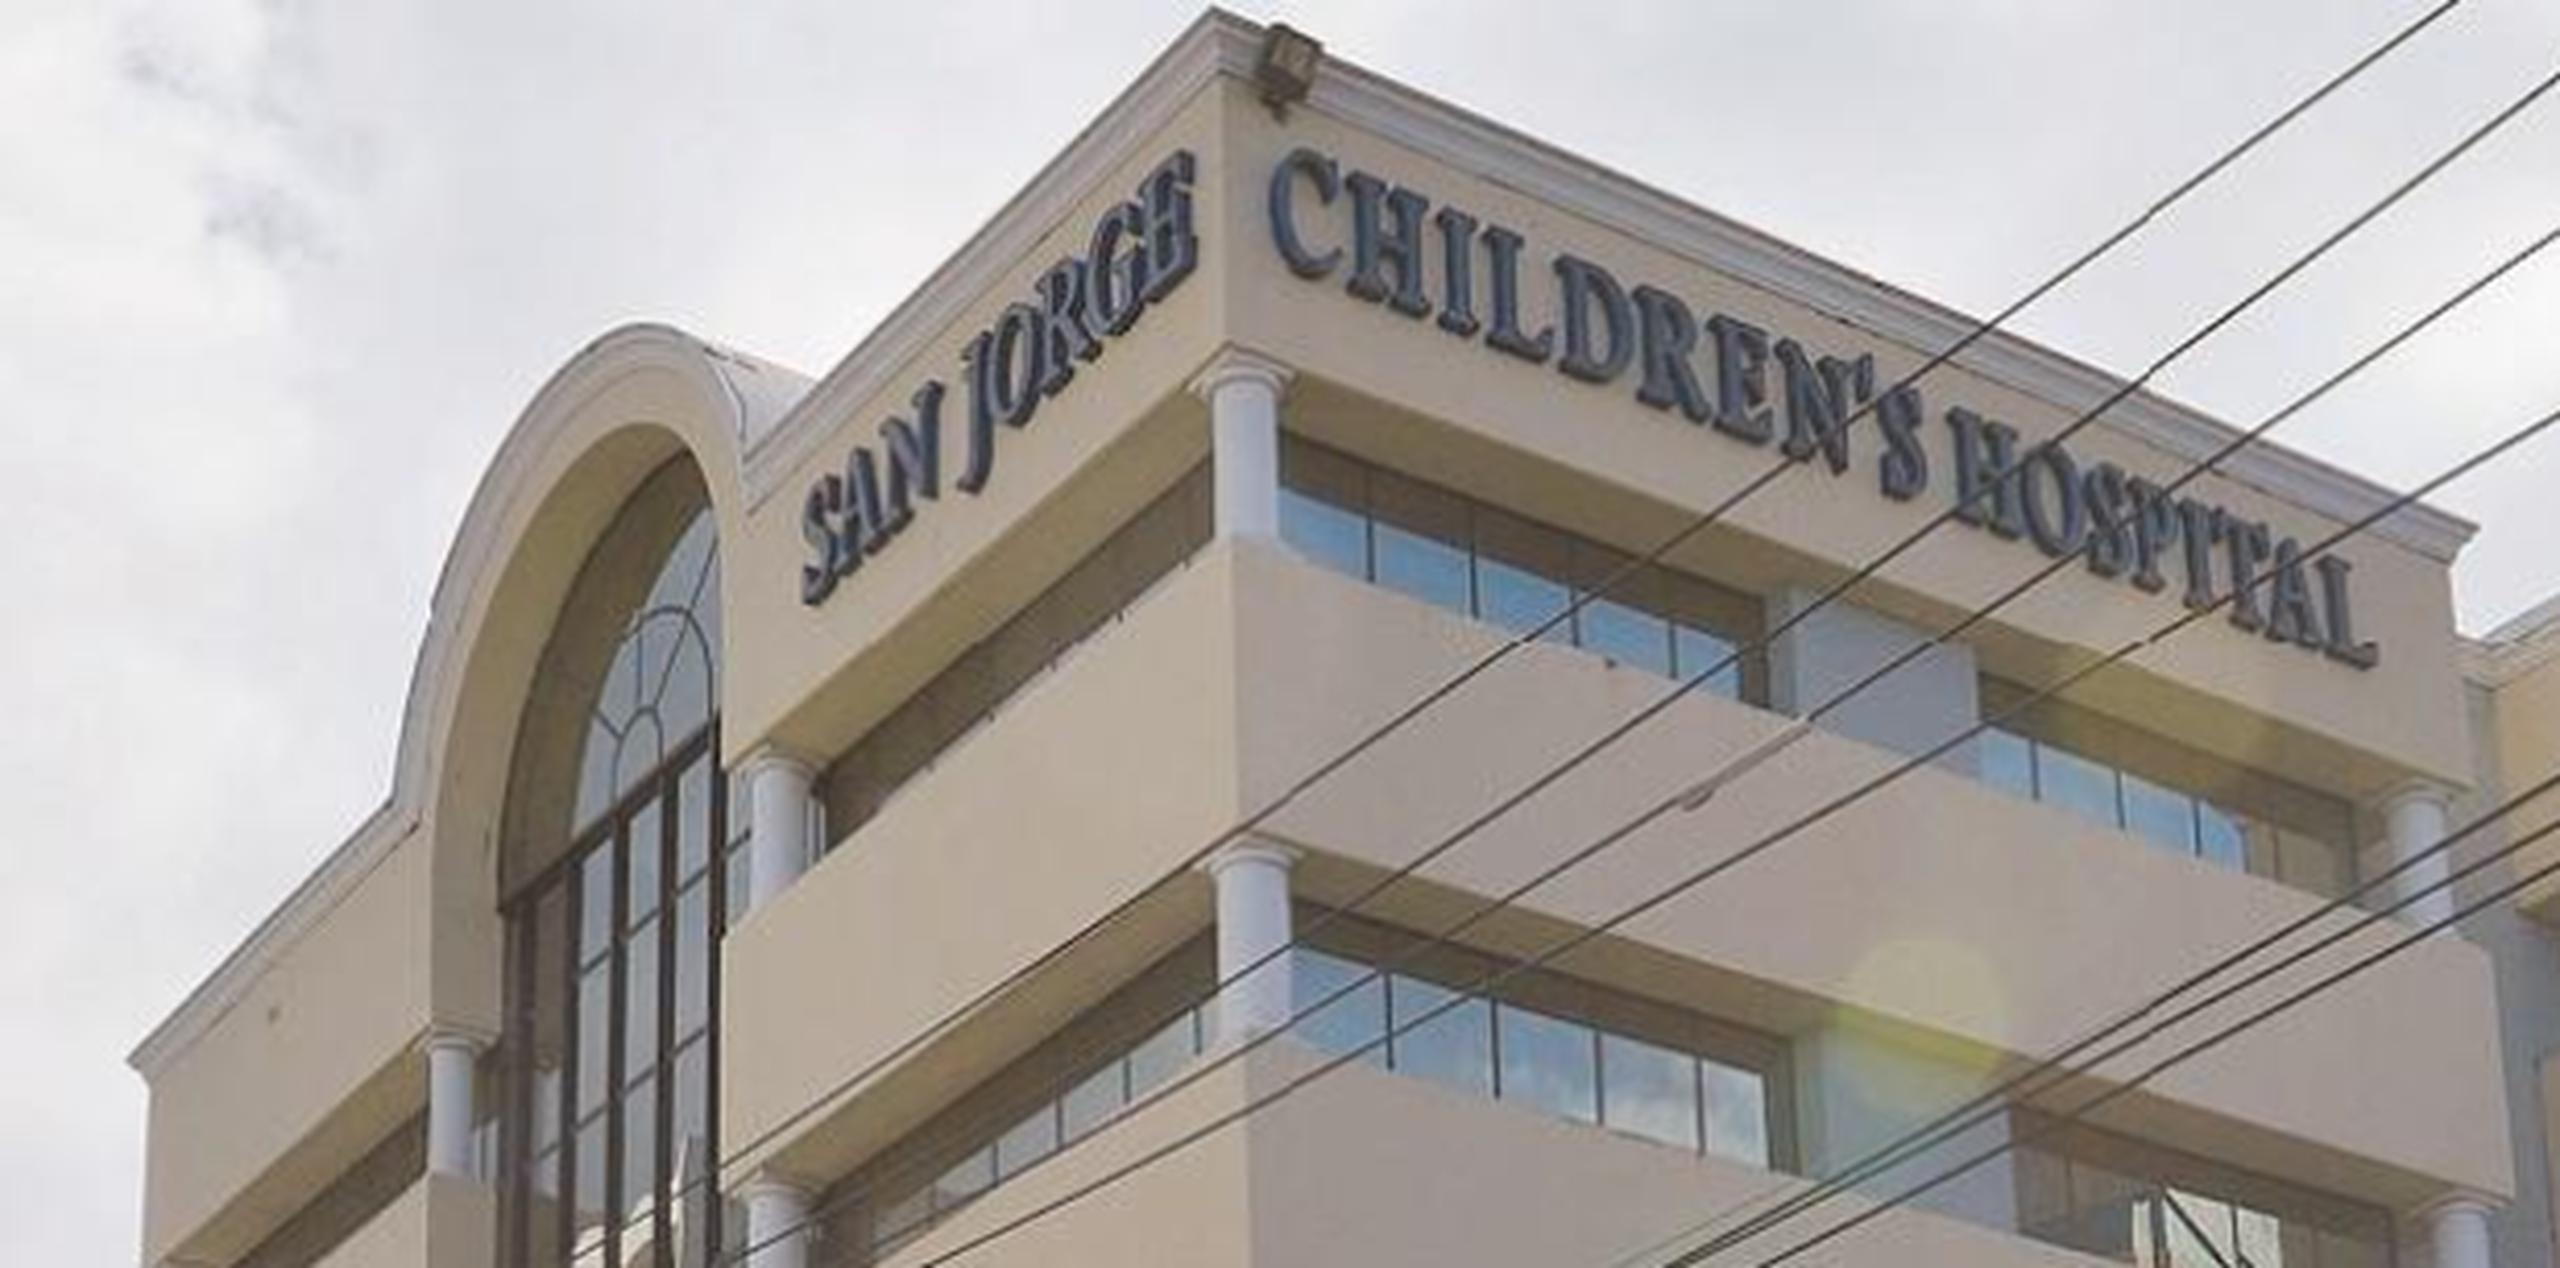 La presunta agesión sexual contra un menor ocurrida en el San Jorge Children's Hospital podría desatar una investigación cameral sobre los protocolos de seguridad hospitalarios. (Archivo)